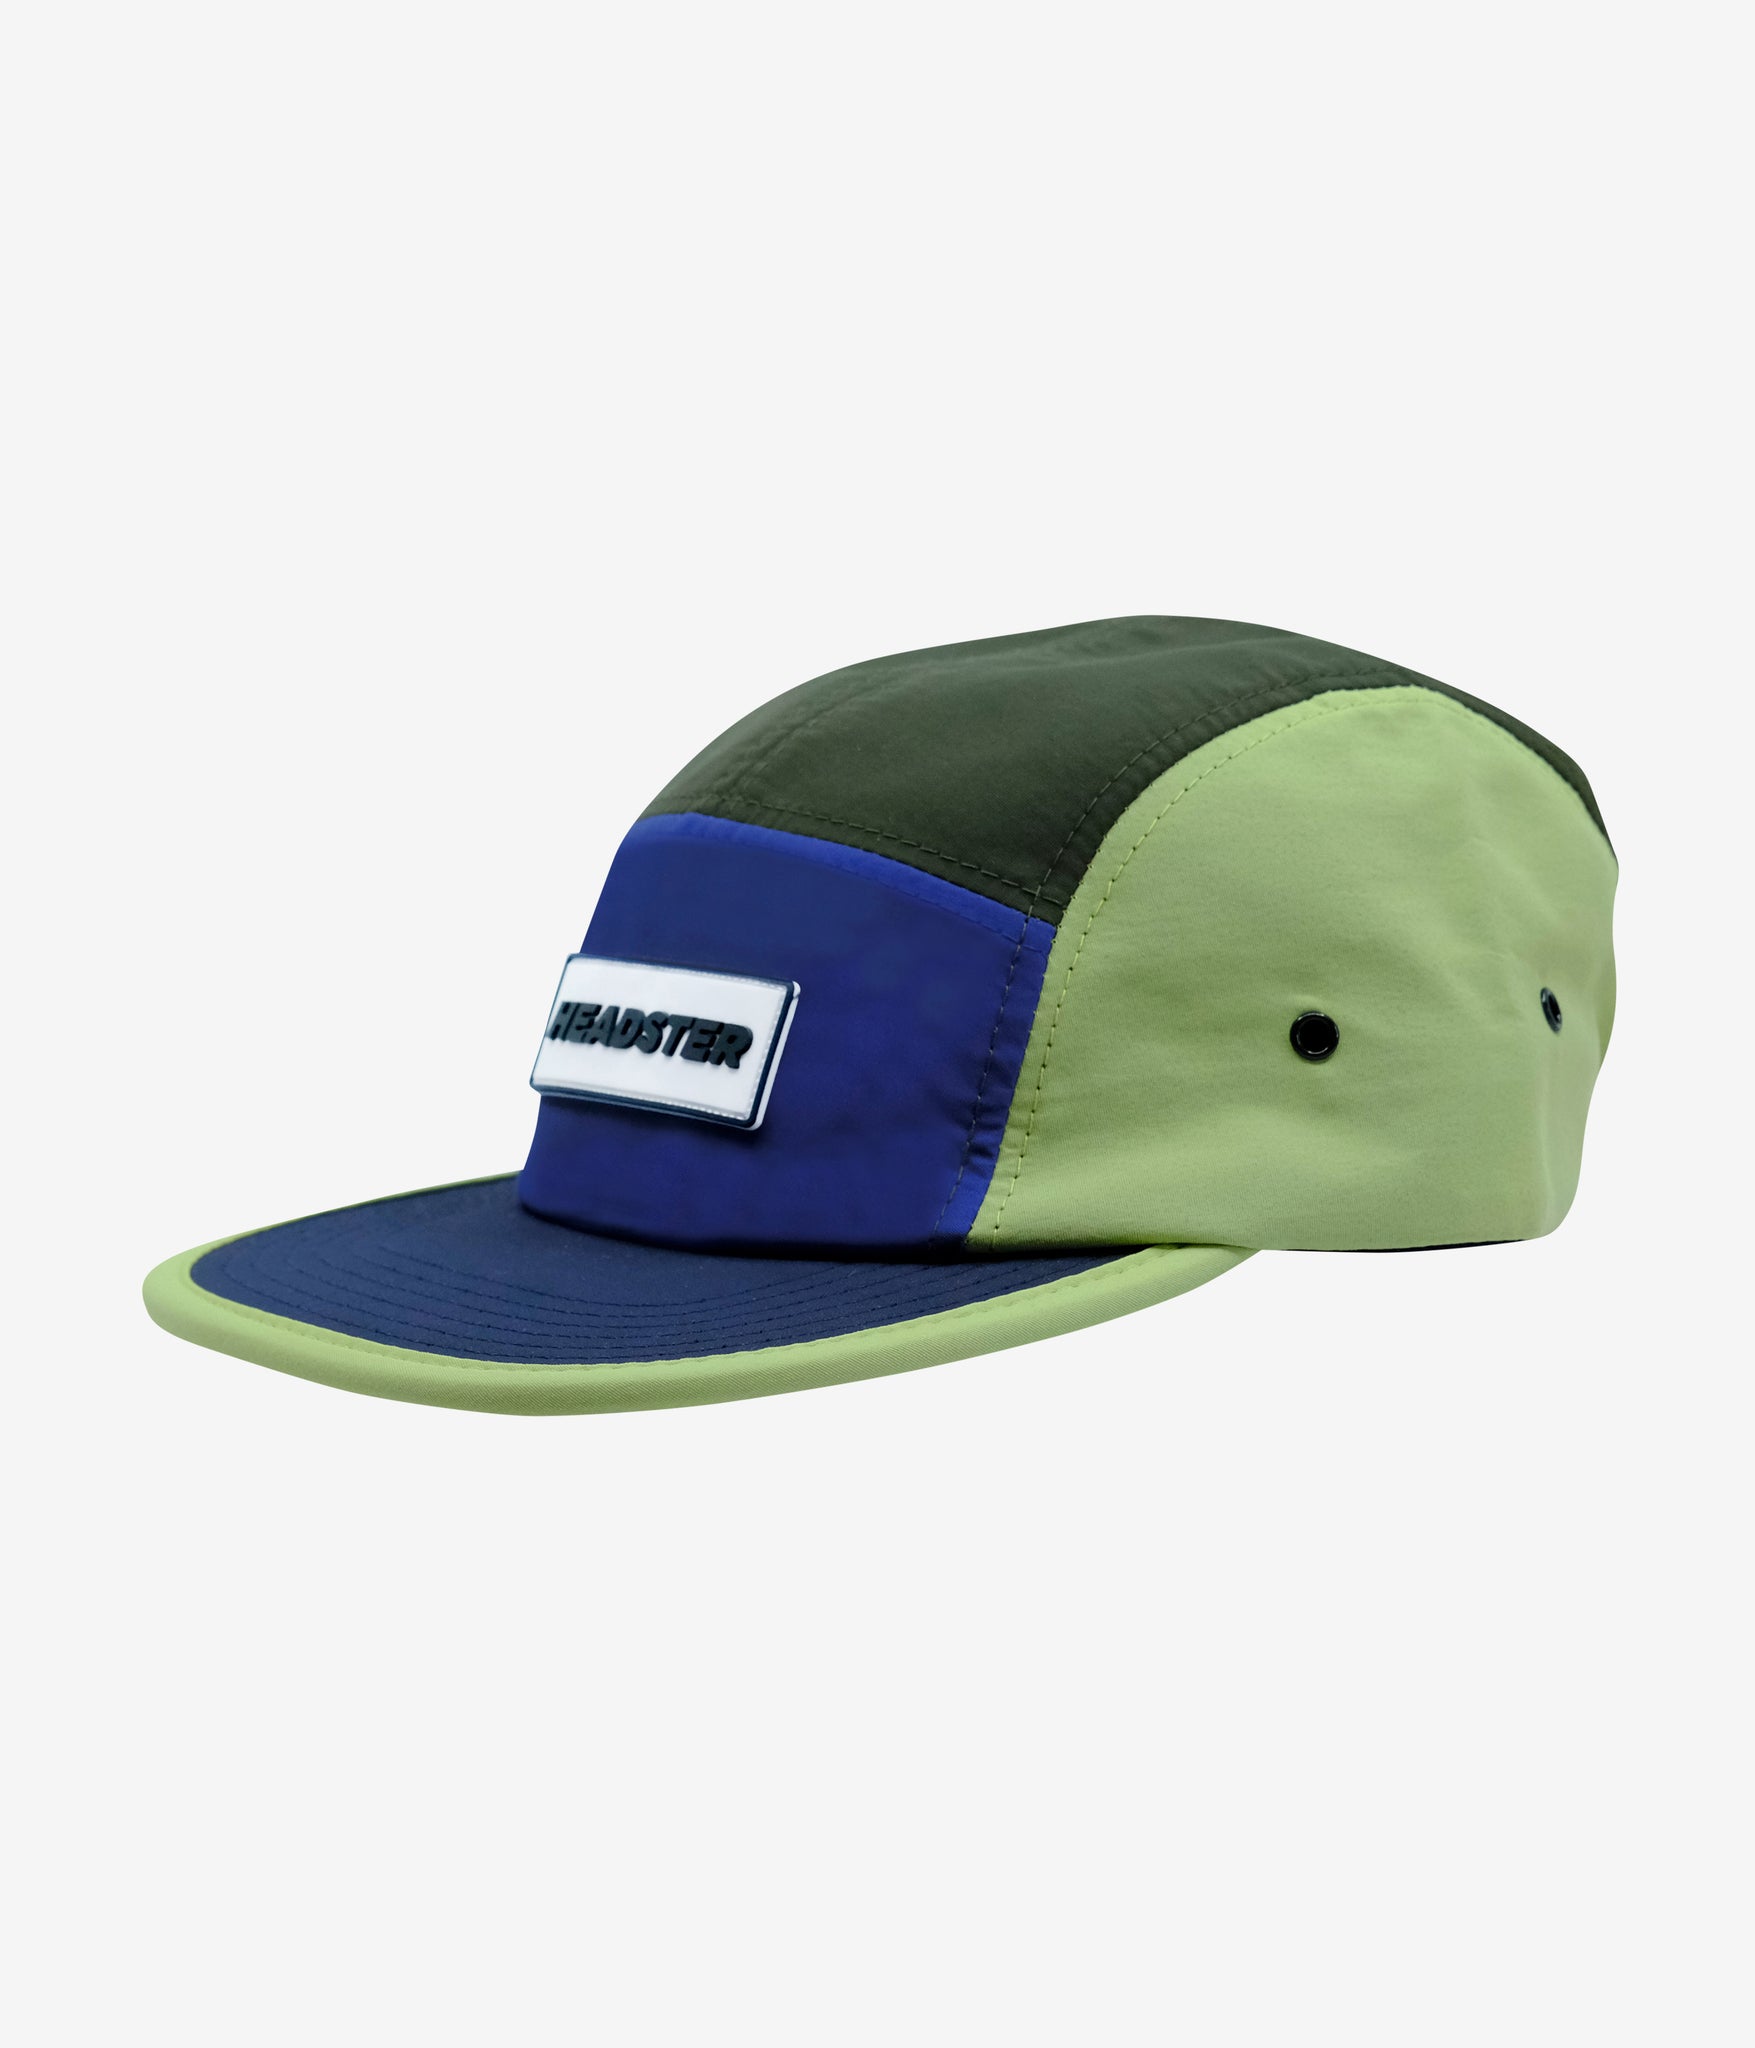 Runner Foamy Green 5 Panel Hat